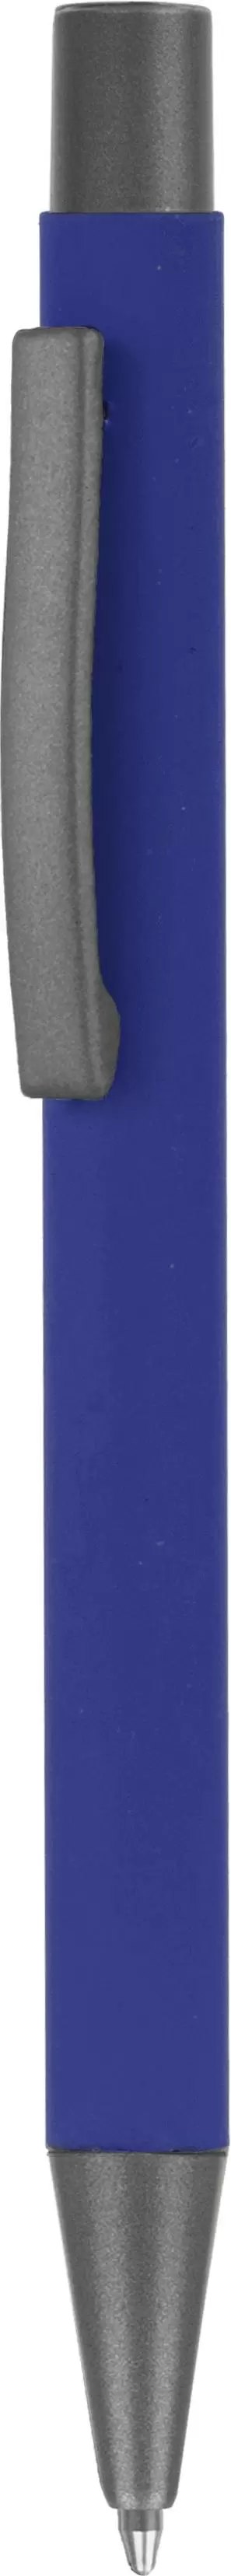 Ручка MAX SOFT TITAN Синяя 1110-01